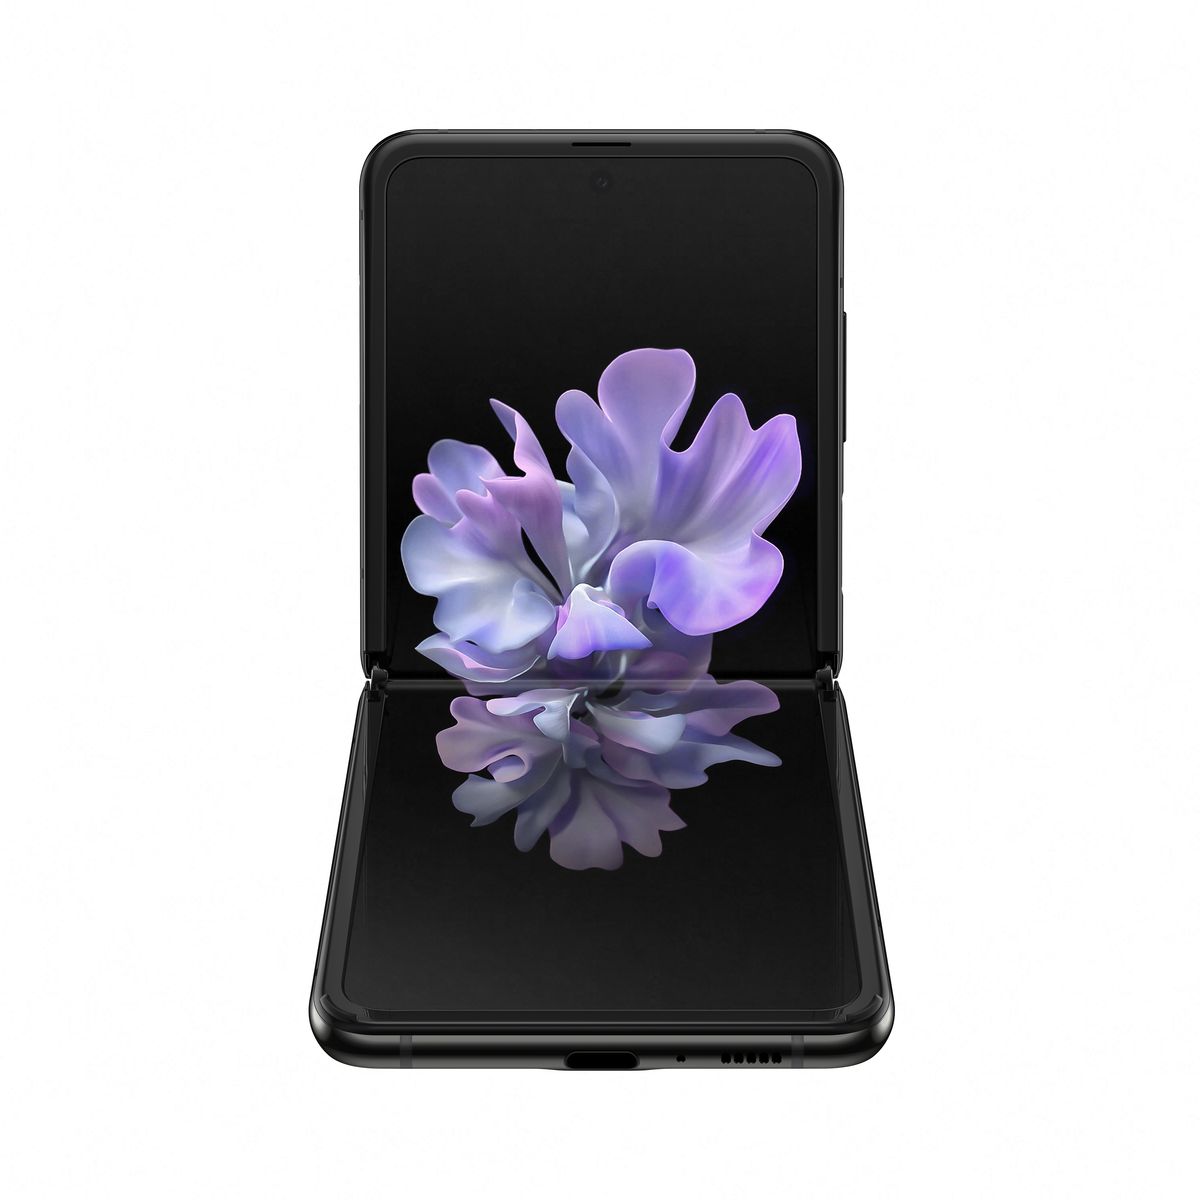 Samsung Galaxy Z Flip Smartphone Black 256GB/8GB/6.7 Inch FHD+/12MP+10MP/3300mAh/Single + eSIM